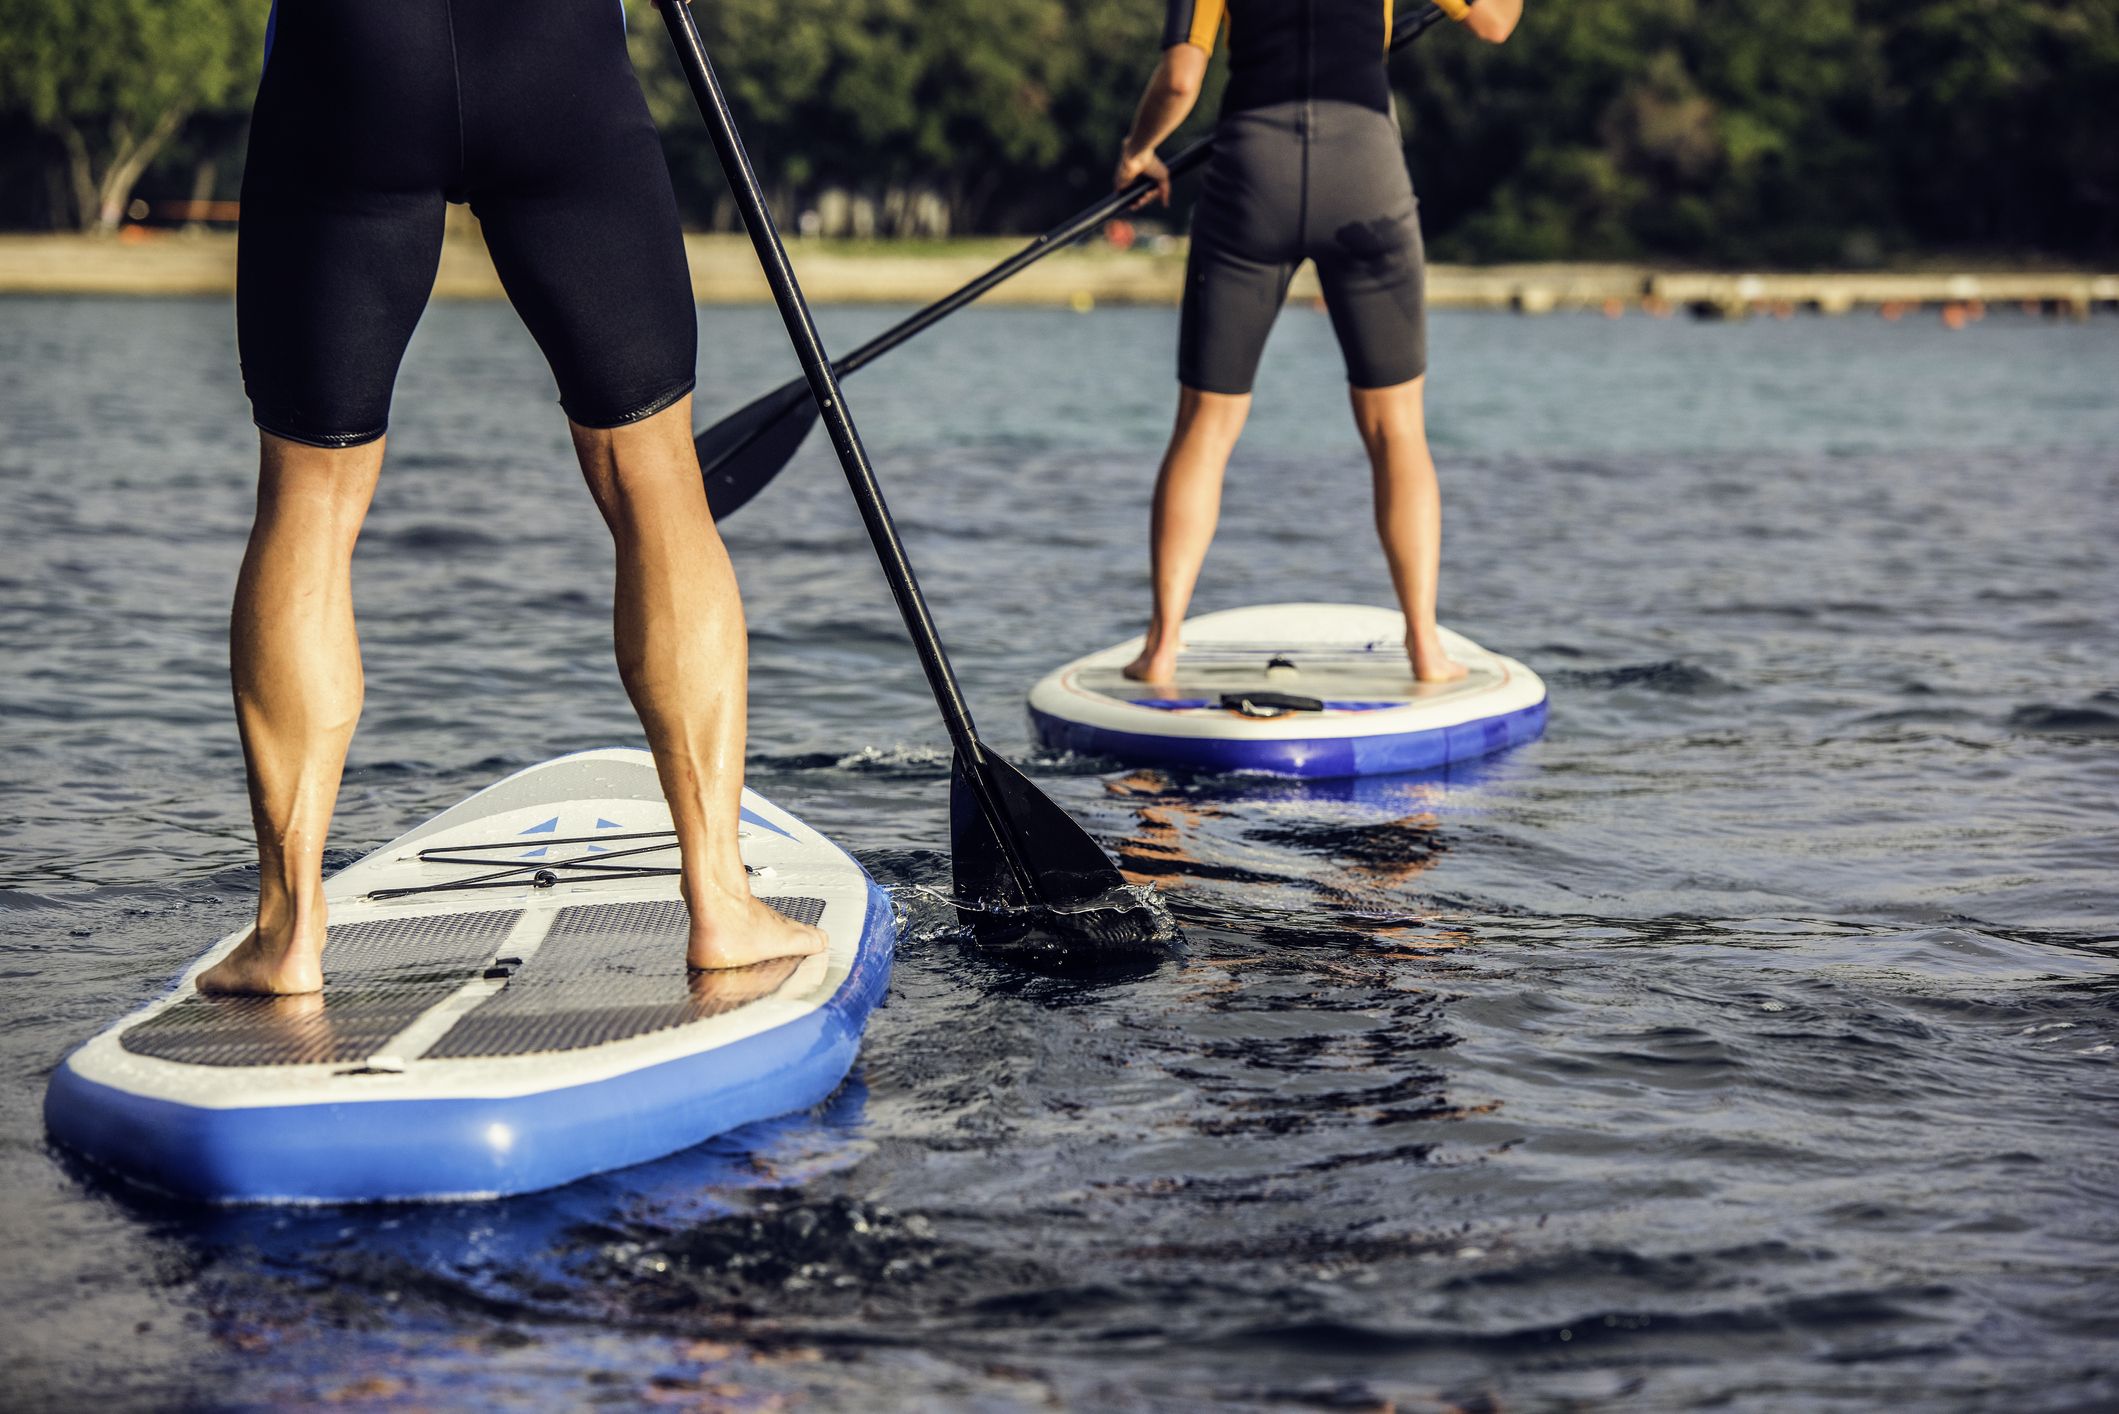 Tablas de Paddle Surf hinchables en Acuatix